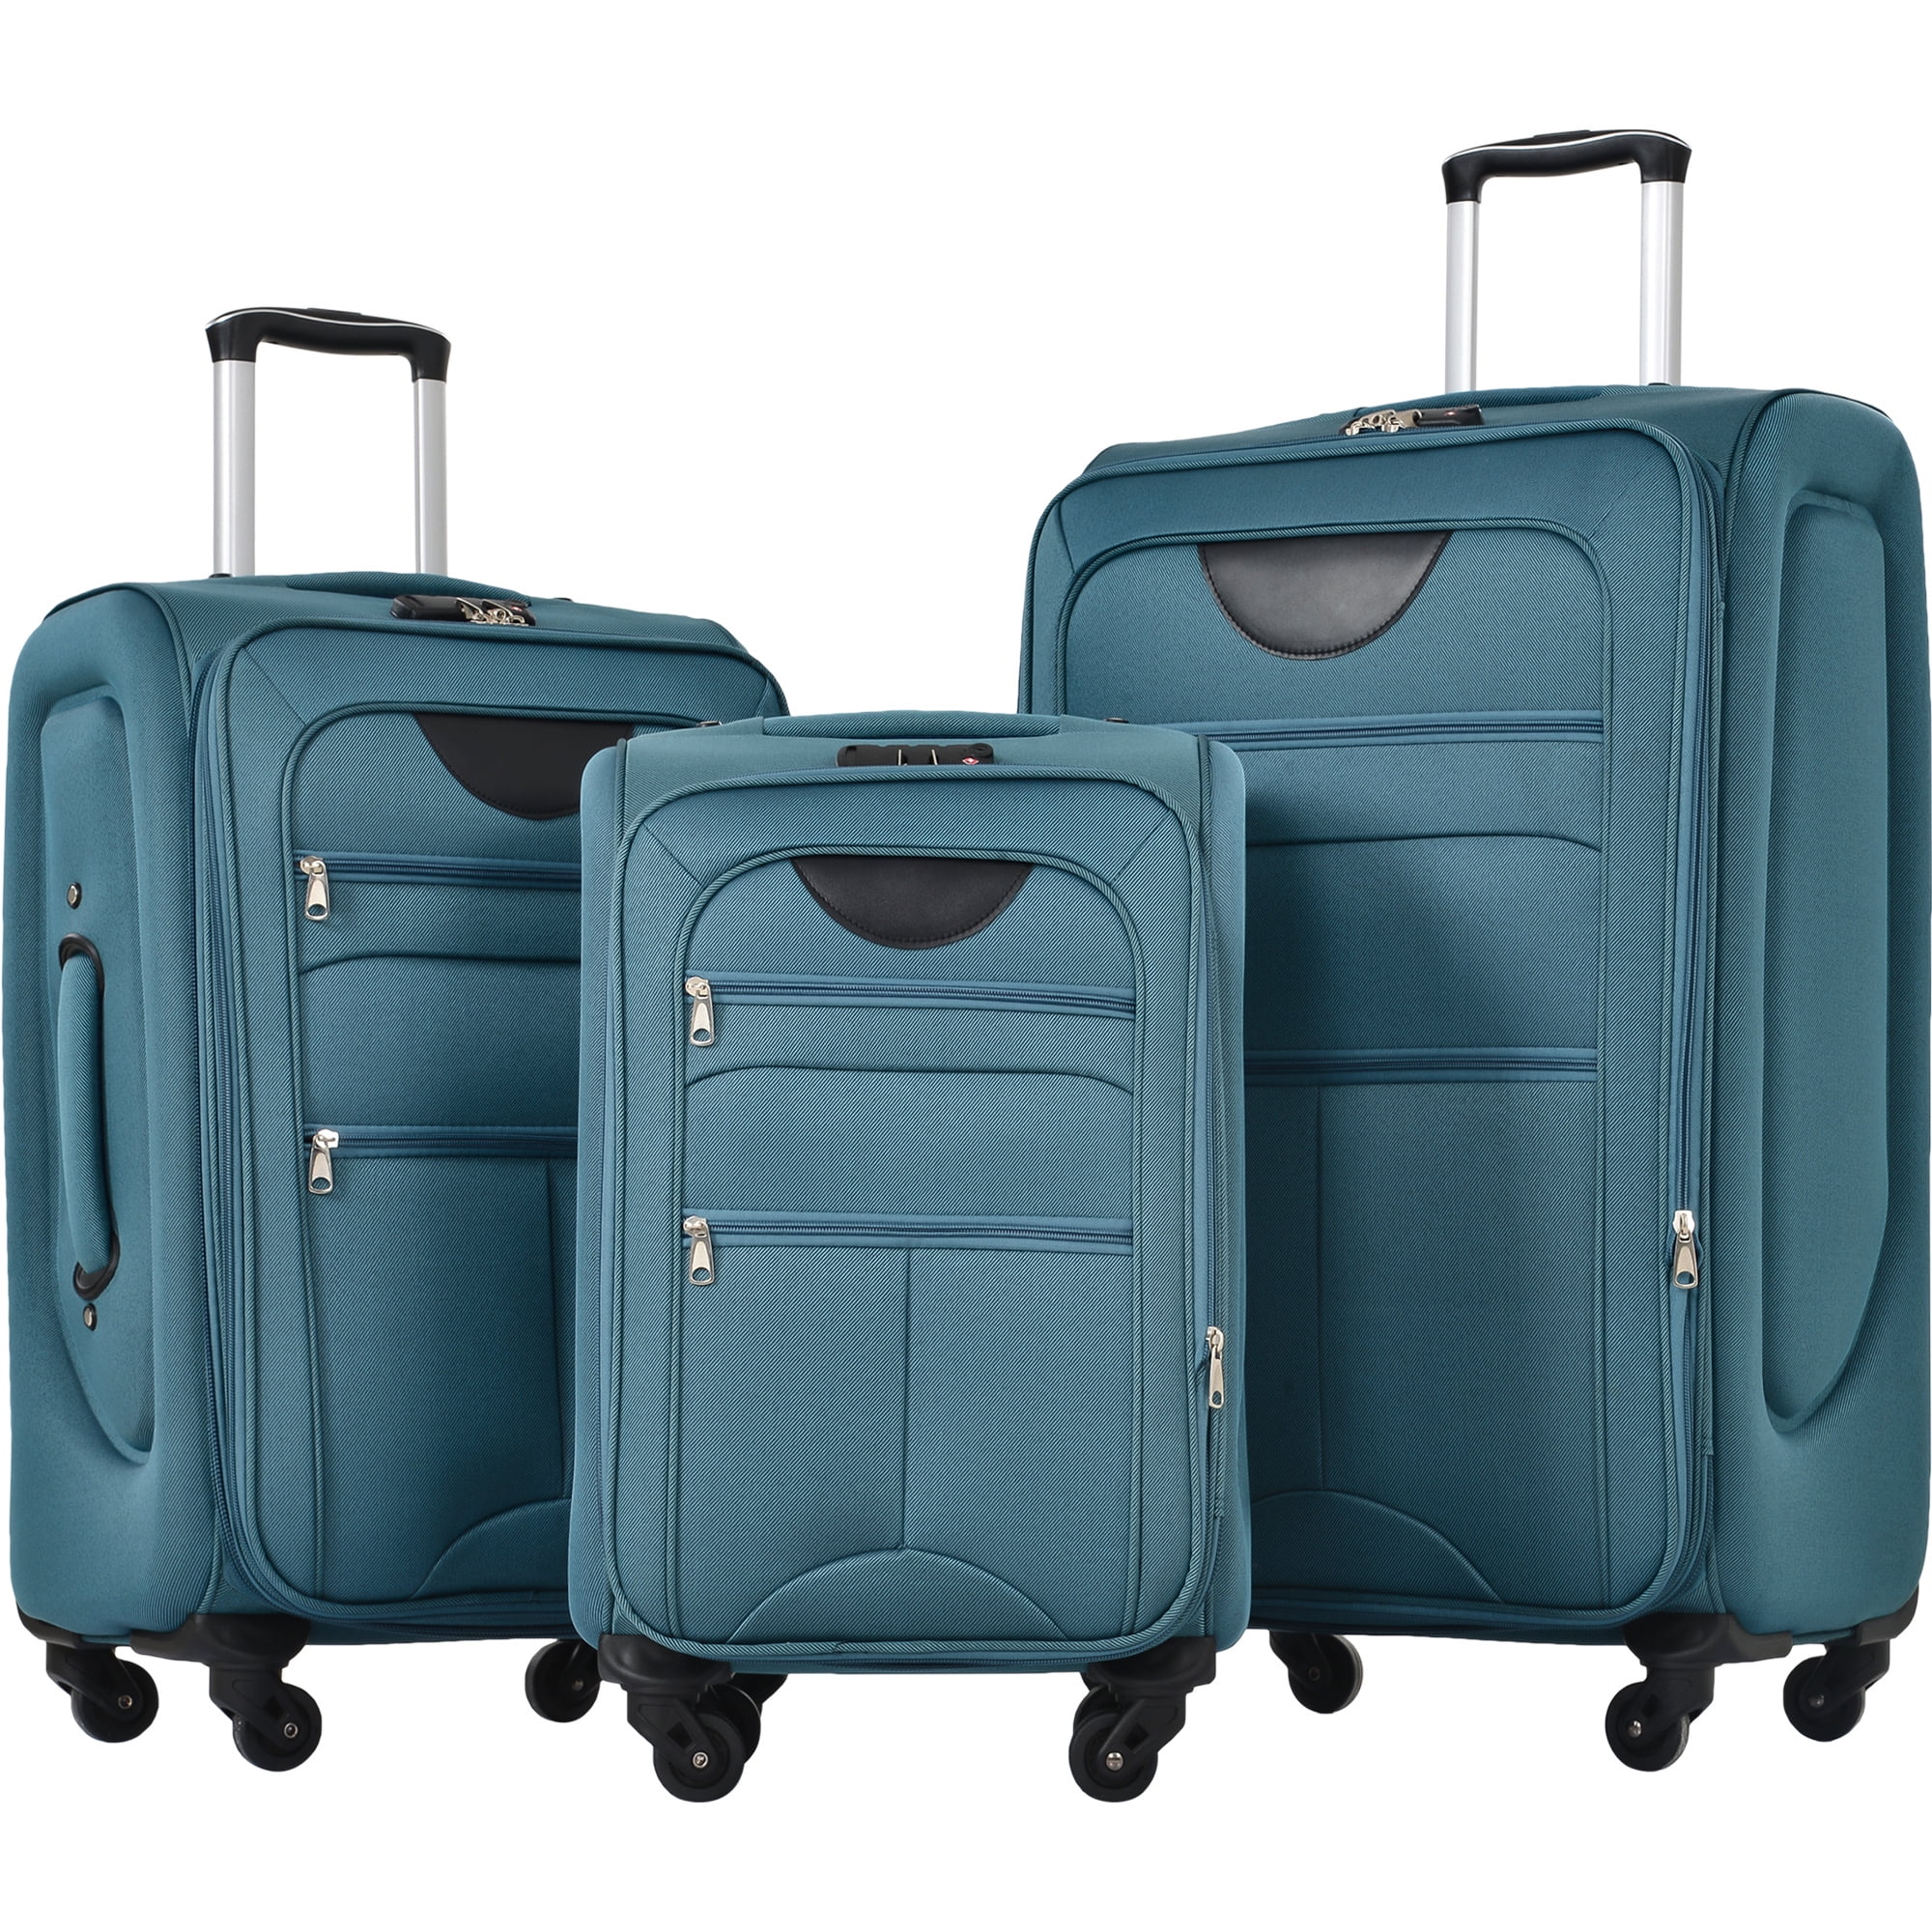 Softside Luggage Expandable 3 Piece Set Suitcas, Aukfa Softshell ...